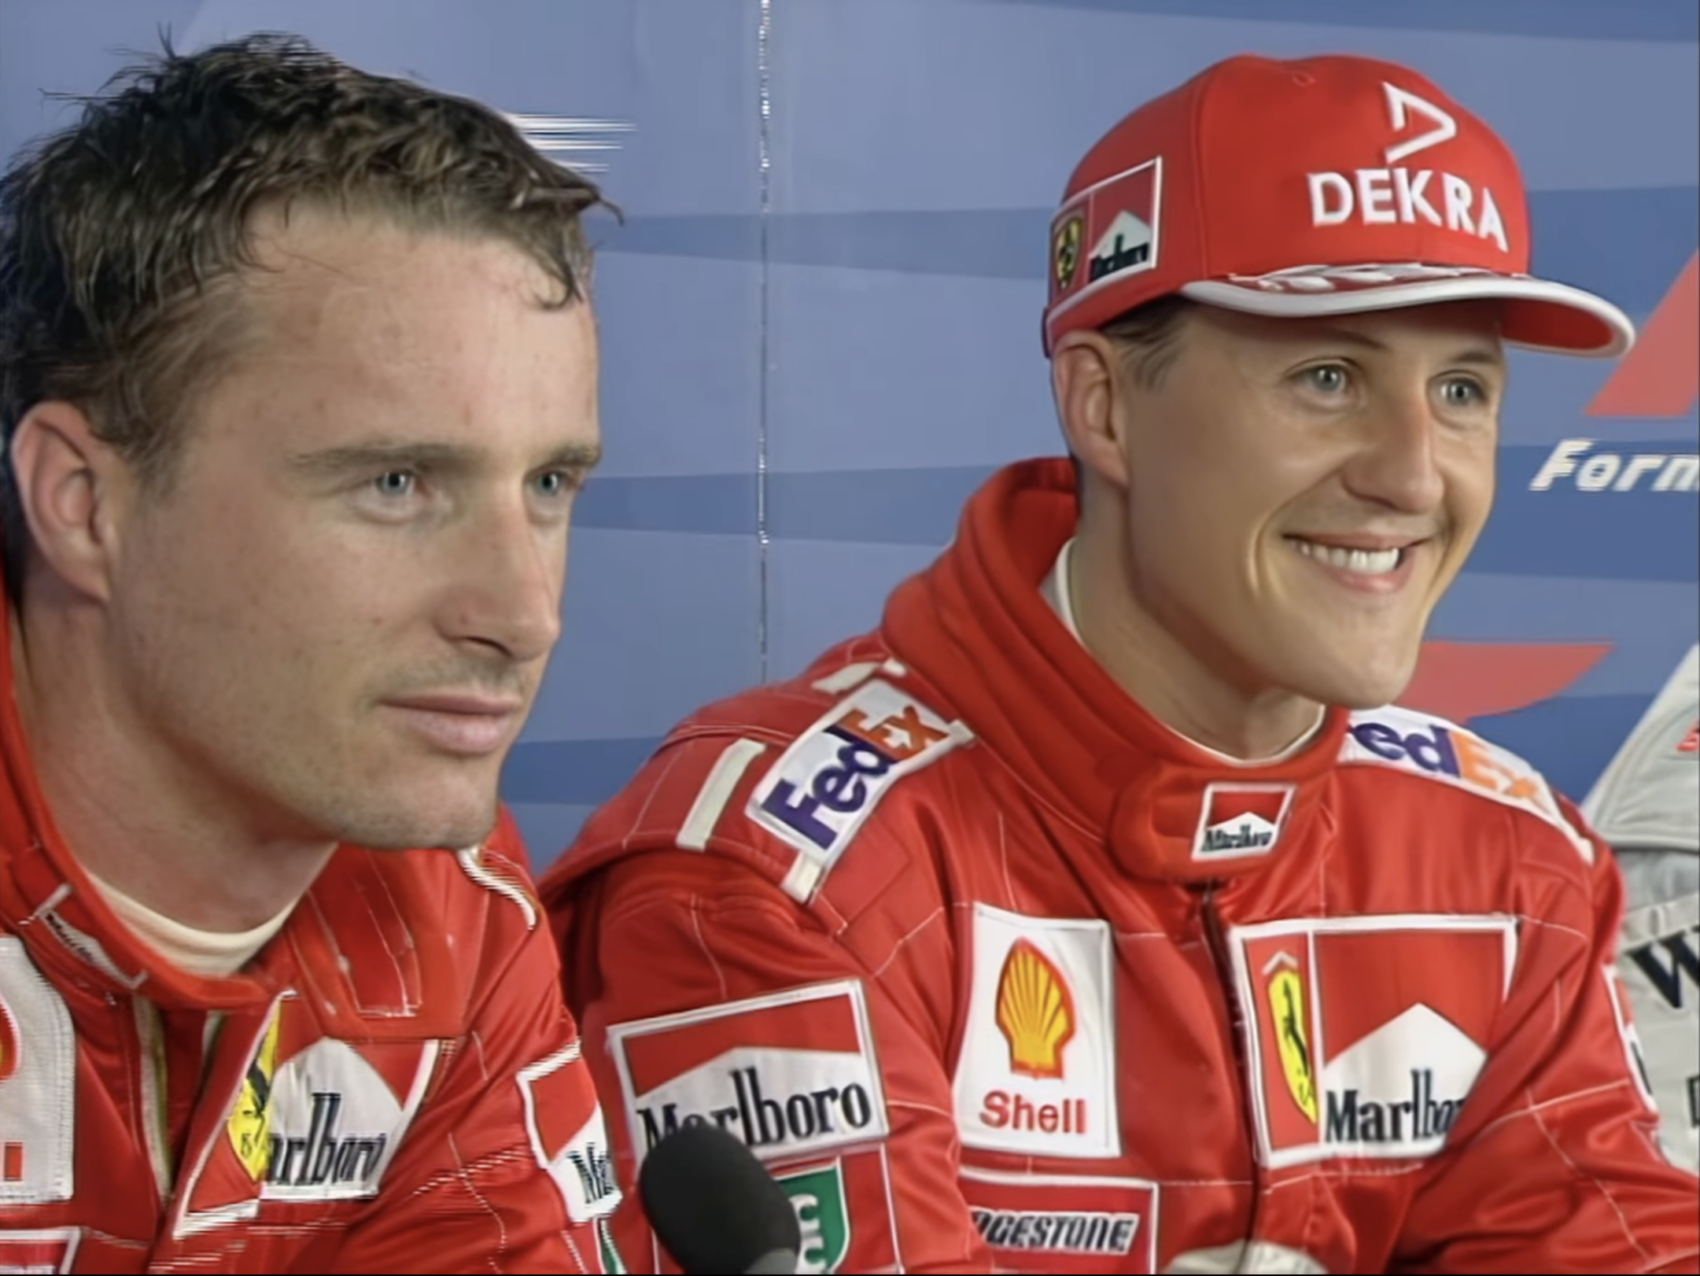 Irvine, Schumacher, Maláj Nagydíj, 1999, Ferrari